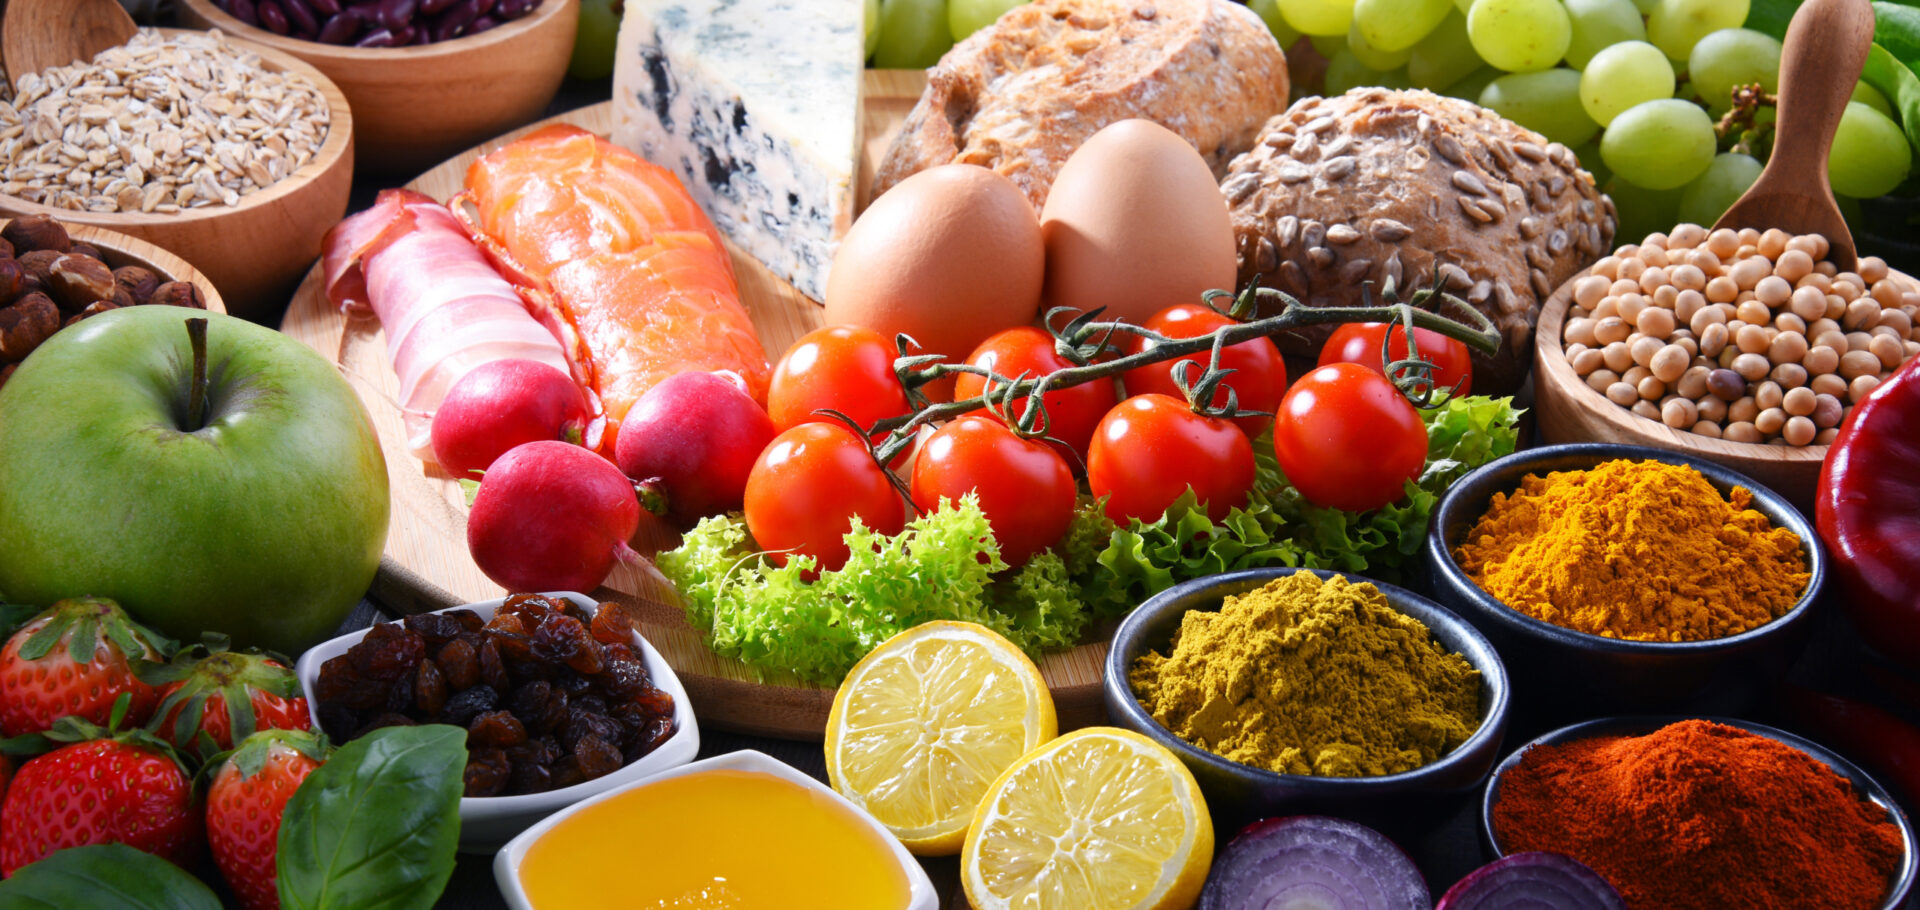 動物性タンパク質と植物性タンパク質が含まれている食品